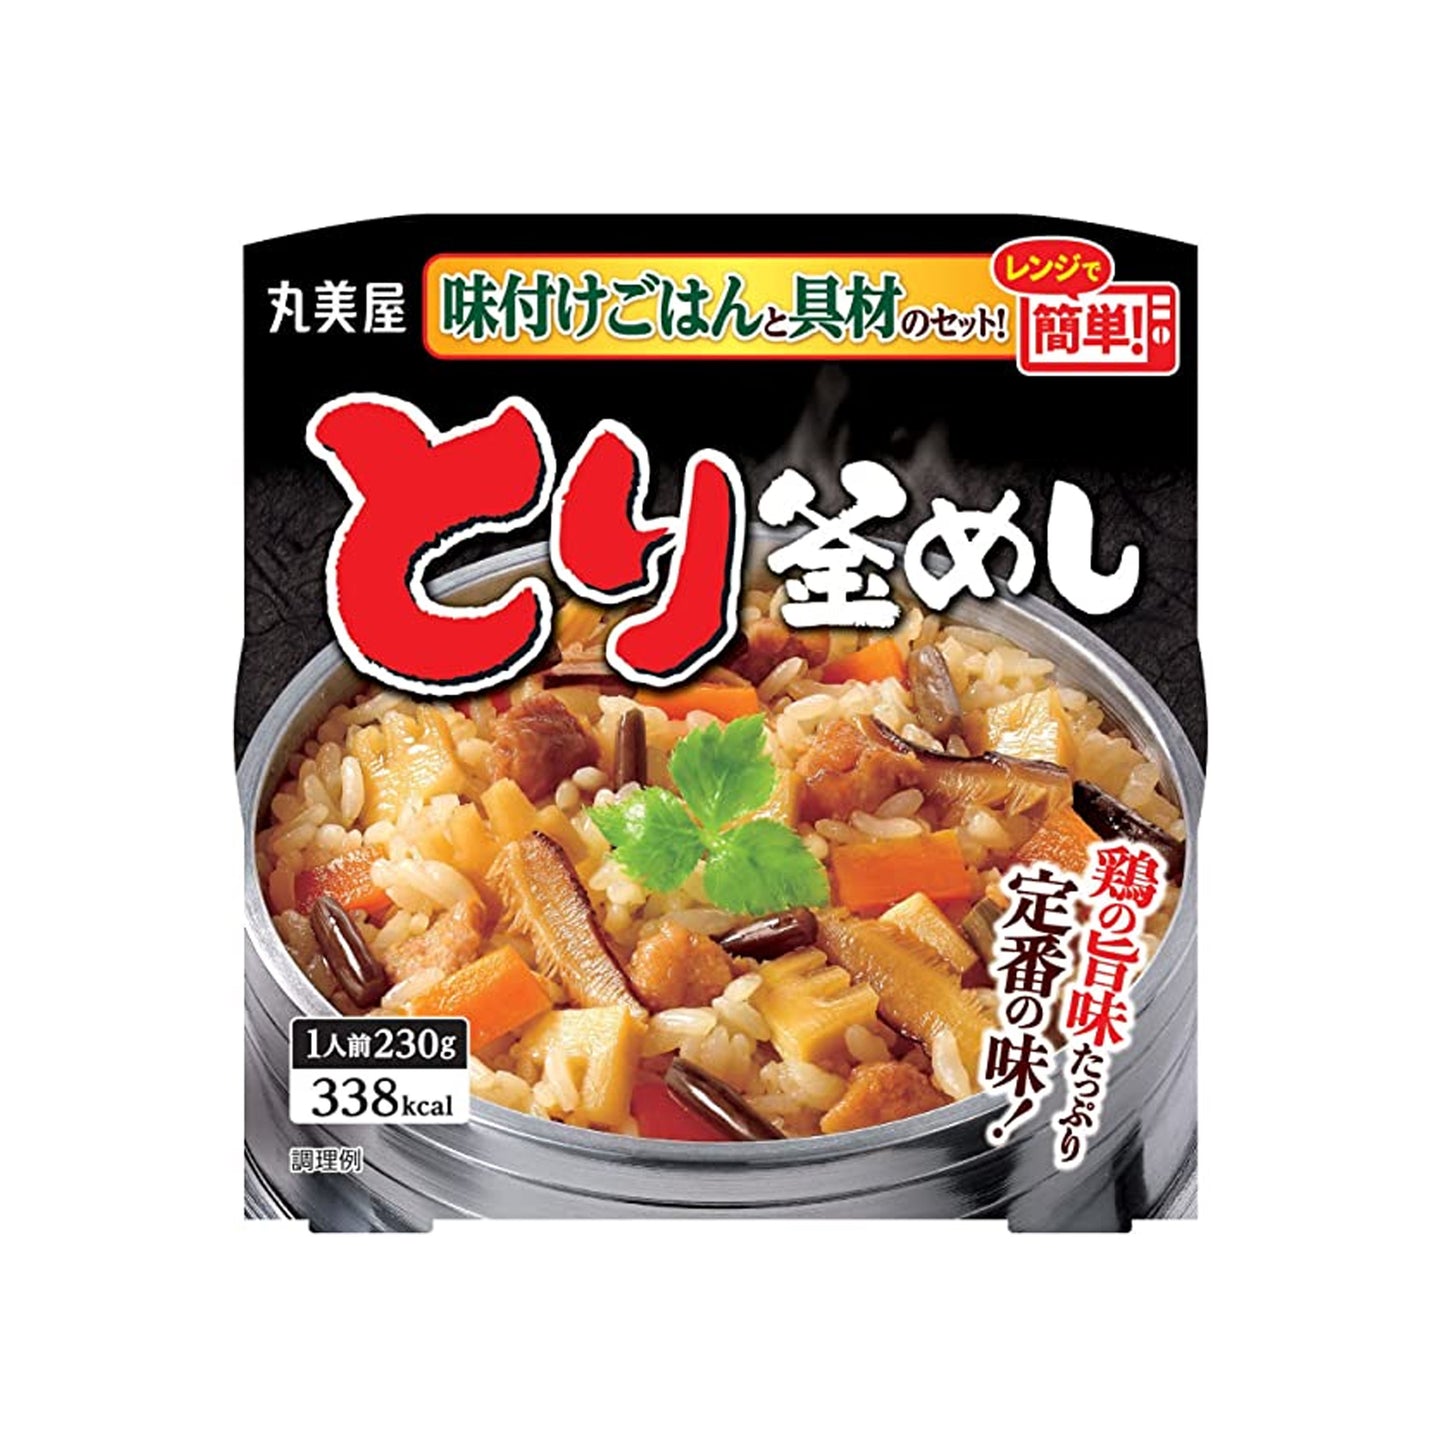 Marumiya Tori Kamameshi Chicken Seasoned Rice (230G)